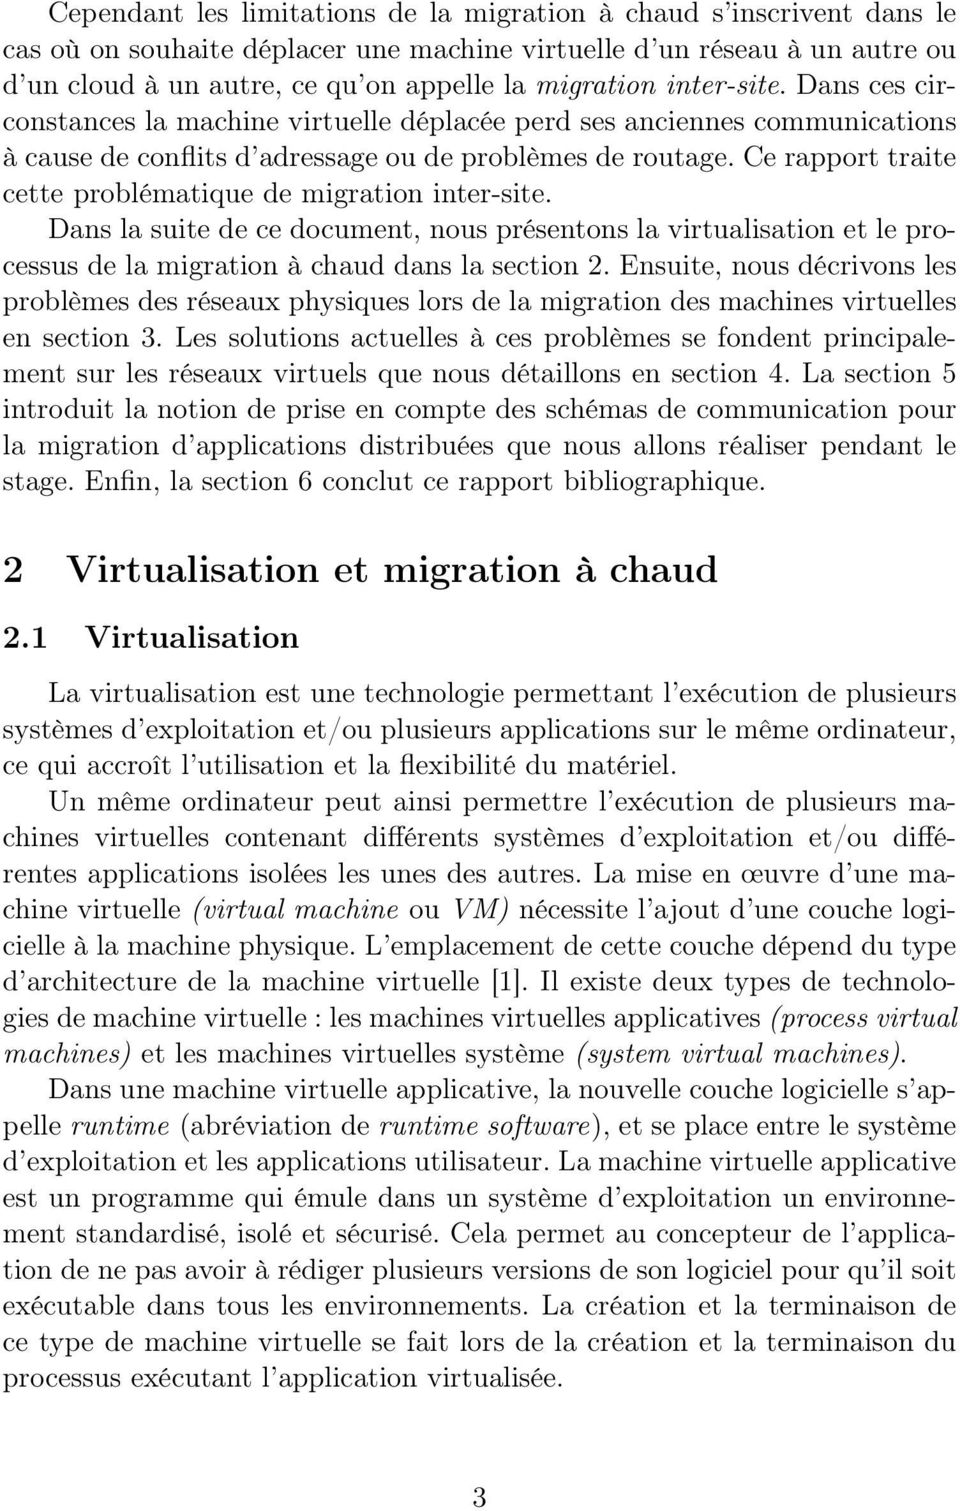 Ce rapport traite cette problématique de migration inter-site. Dans la suite de ce document, nous présentons la virtualisation et le processus de la migration à chaud dans la section 2.